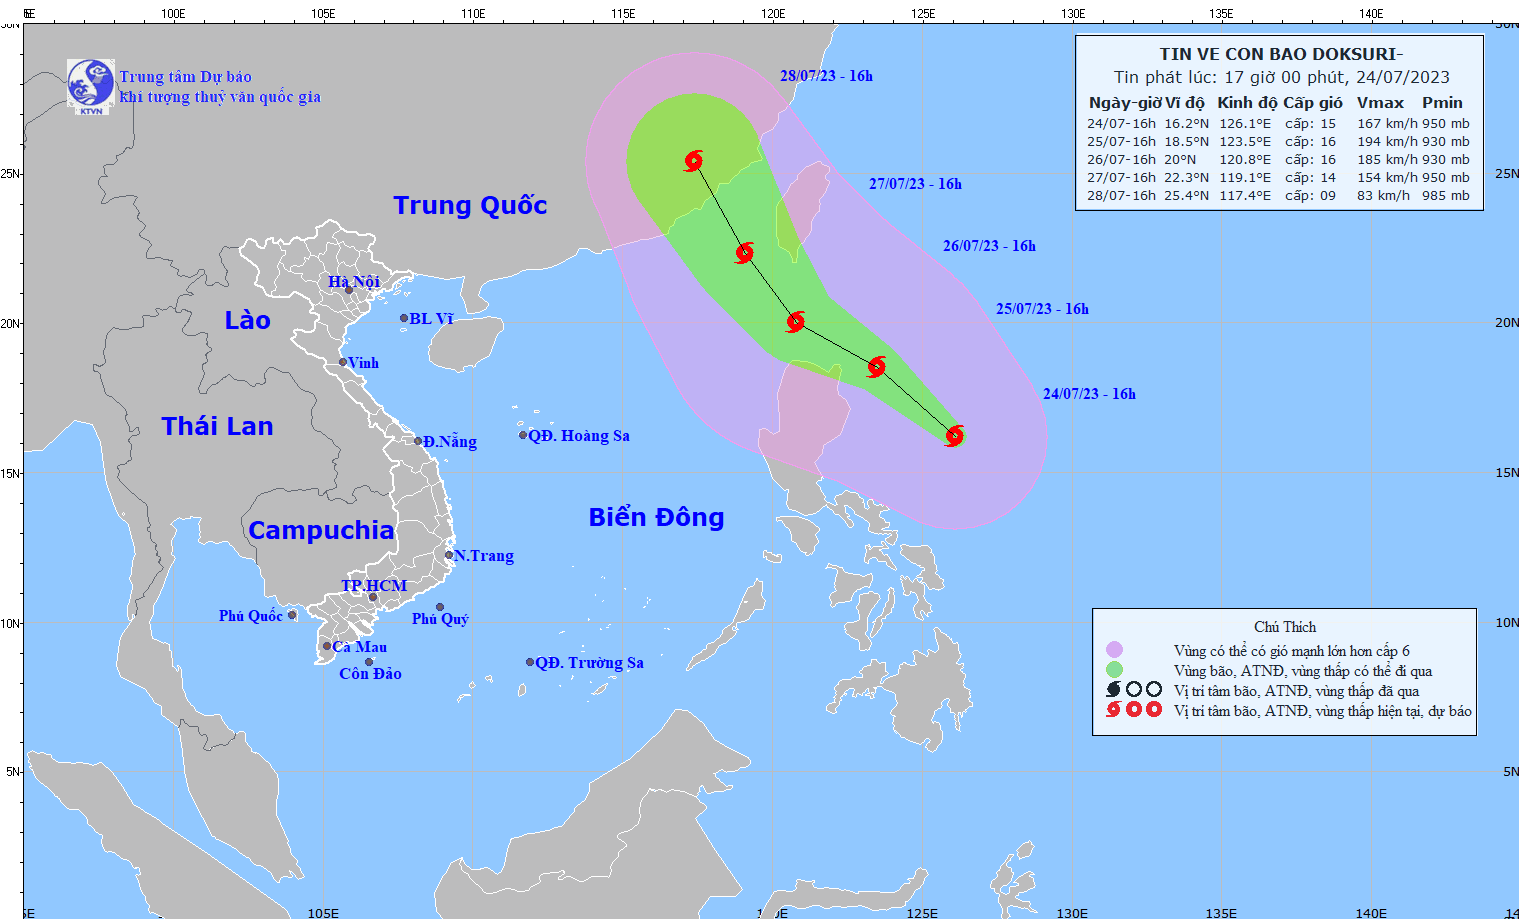 Siêu bão Doksuri giật trên cấp 17 sẽ đi vào Biển Đông - Ảnh 2.